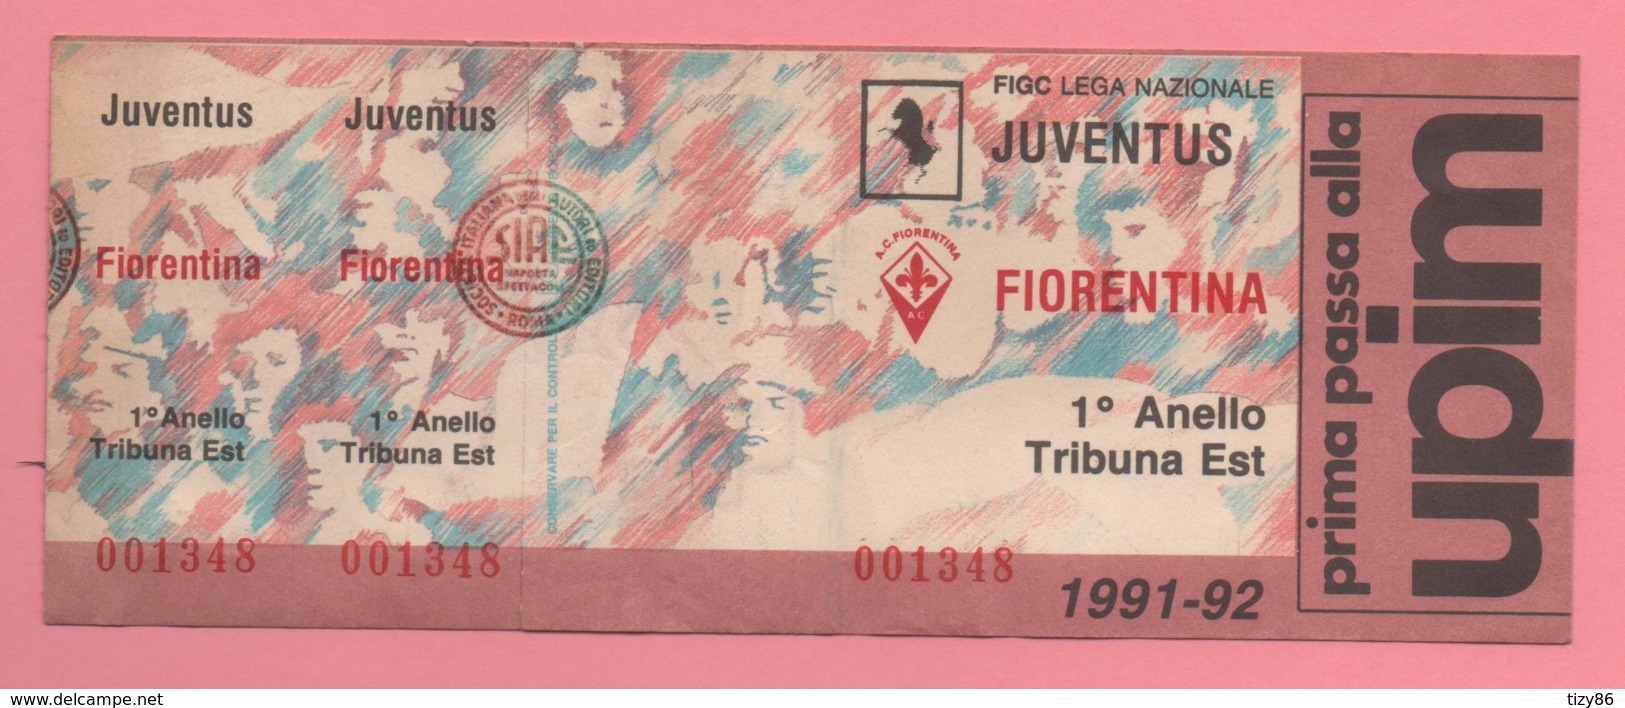 Biglietto D'ingresso Stadio Juventus Fiorentina 1991-92 - Tickets - Vouchers